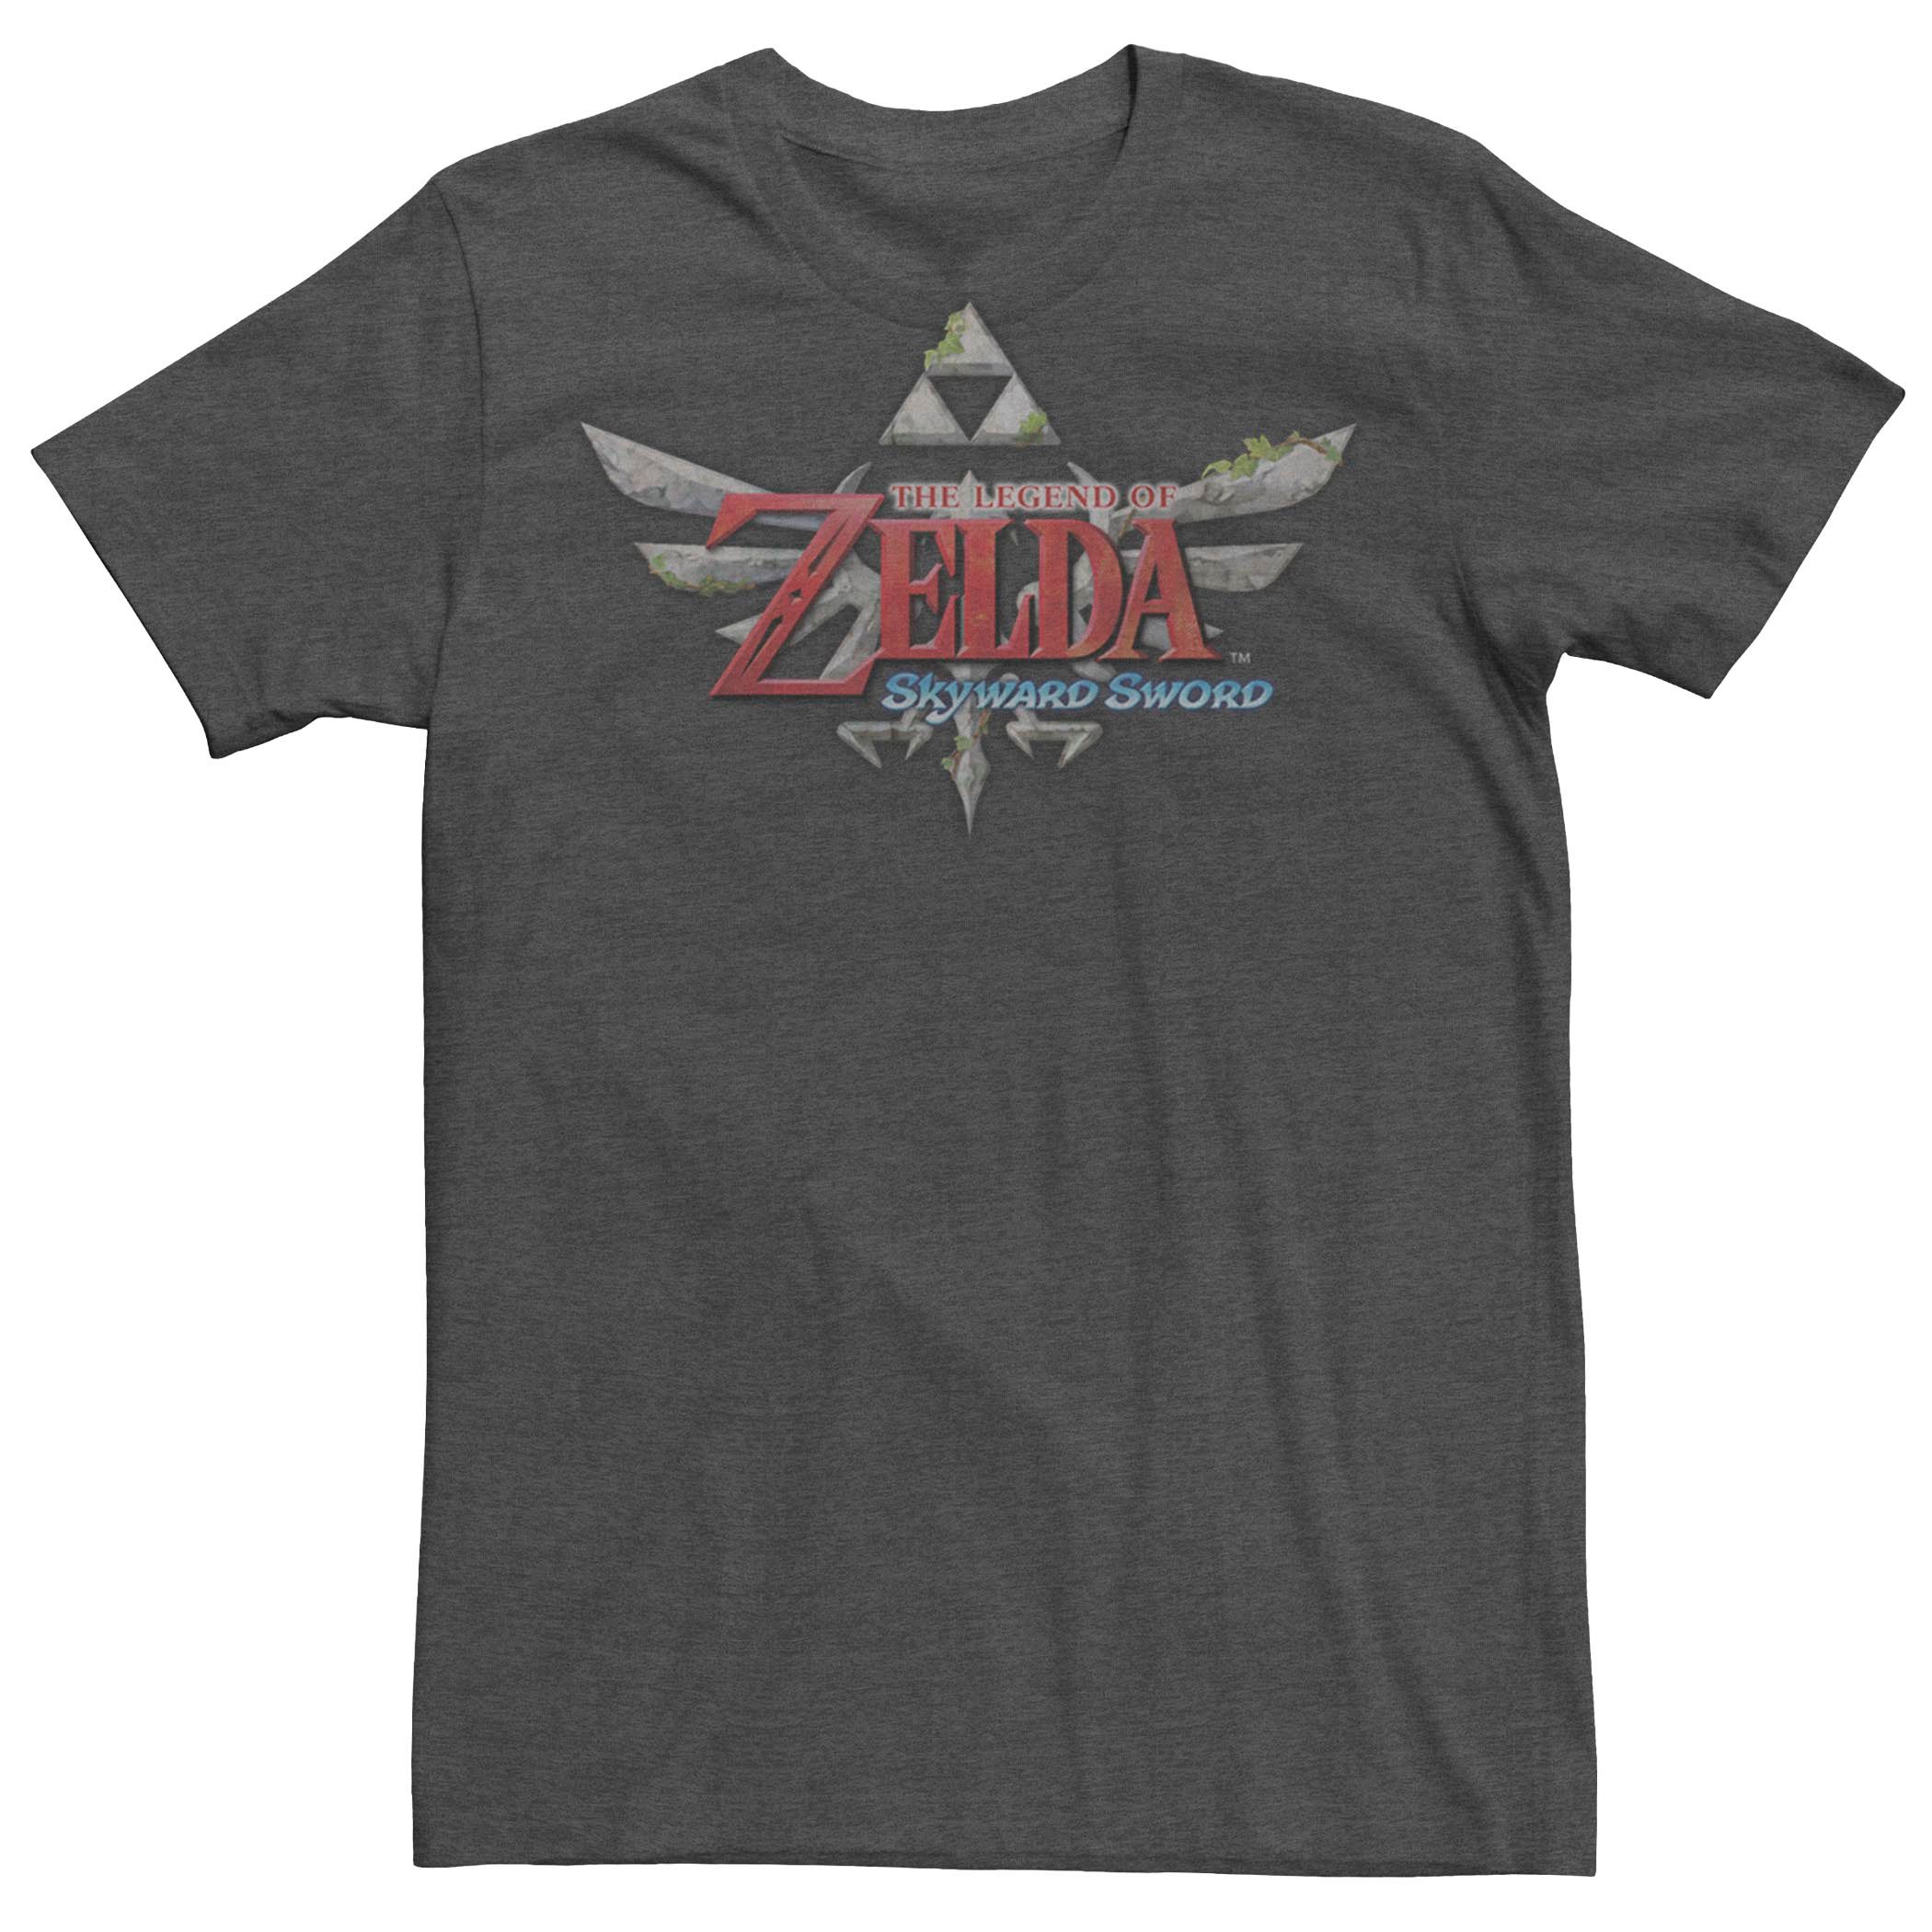 Мужская футболка с логотипом Nintendo Legend Of Zelda Skyward Sword Licensed Character the legend of zelda skyward sword hd ns русская